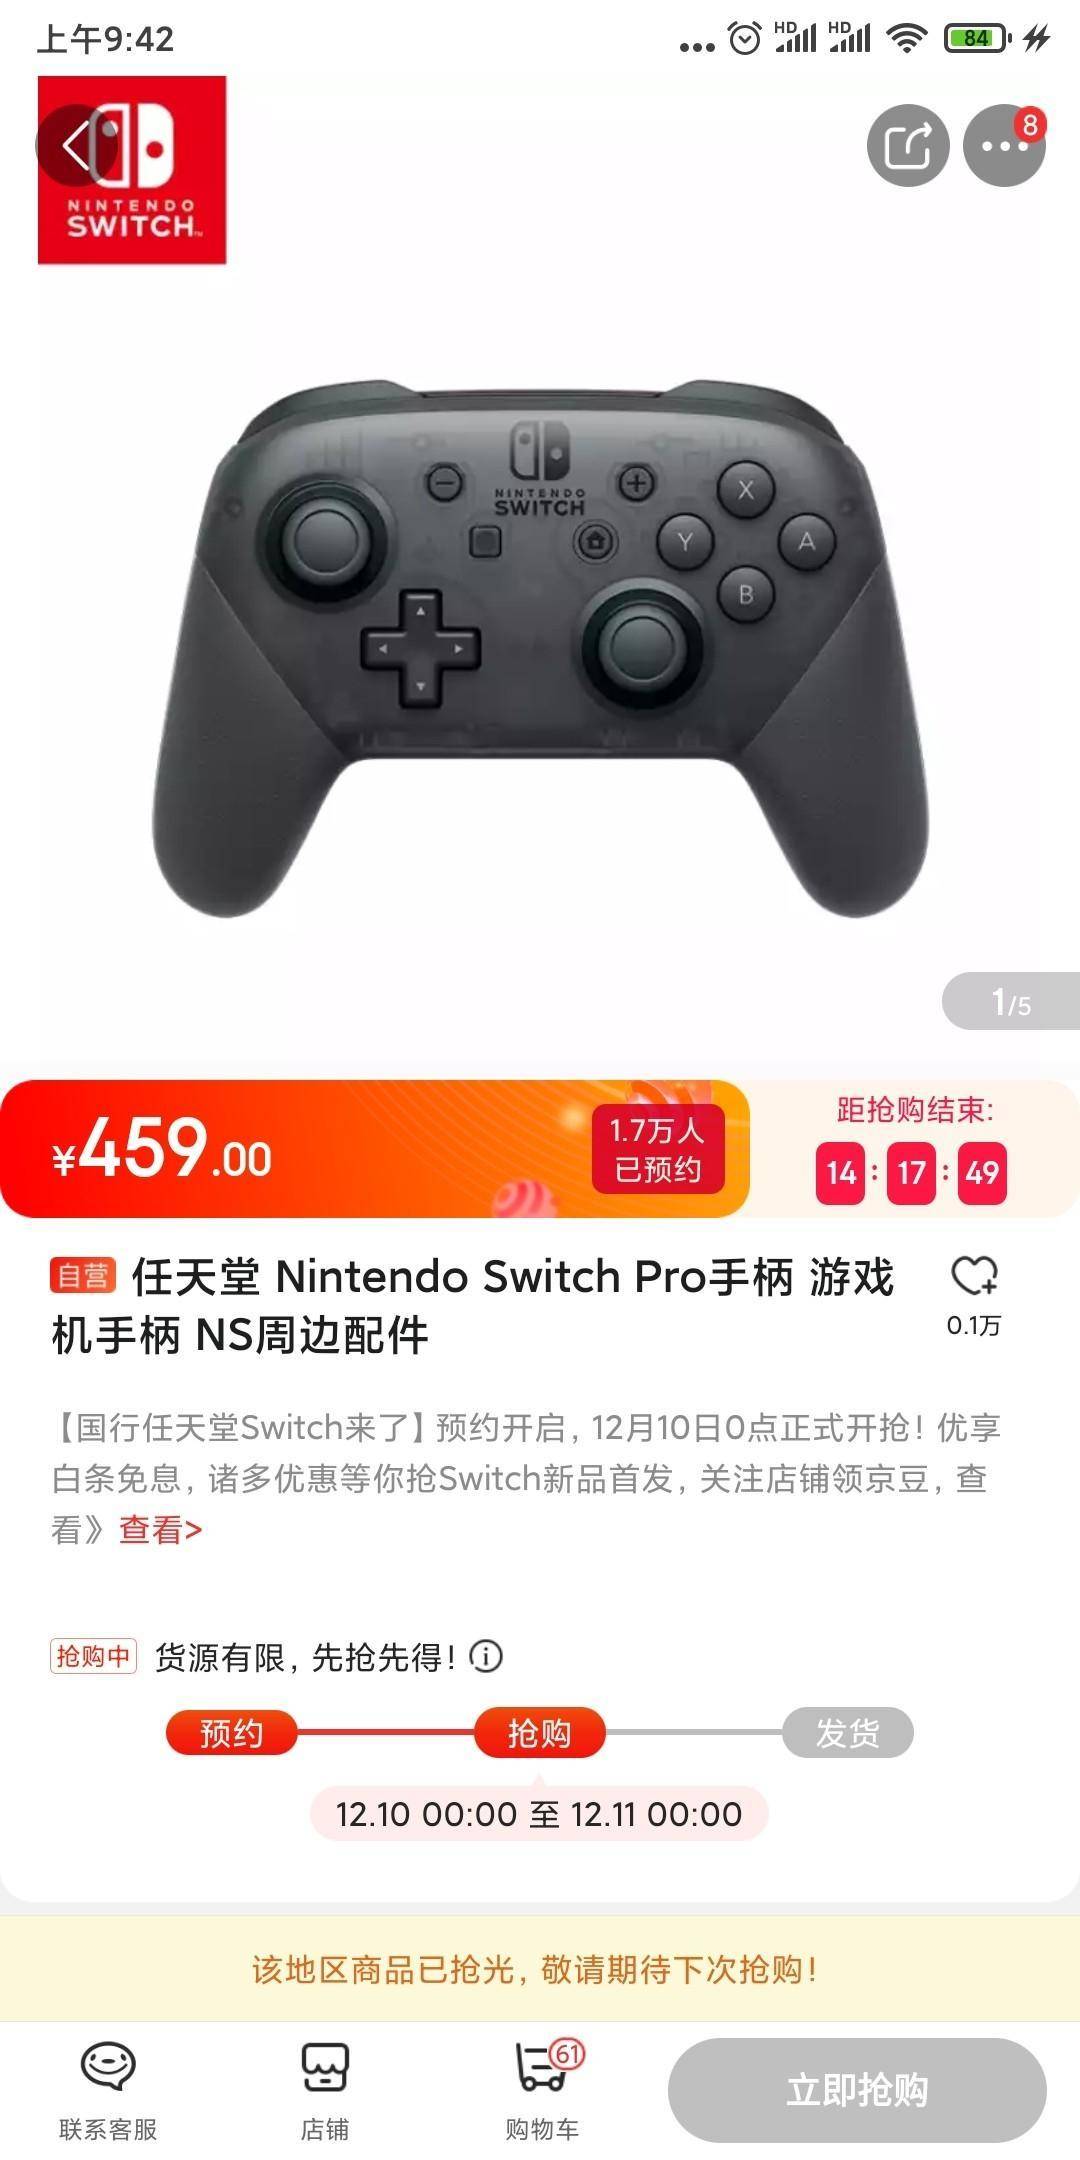 谁买谁傻?国行NS登上京东游戏机榜热卖第一